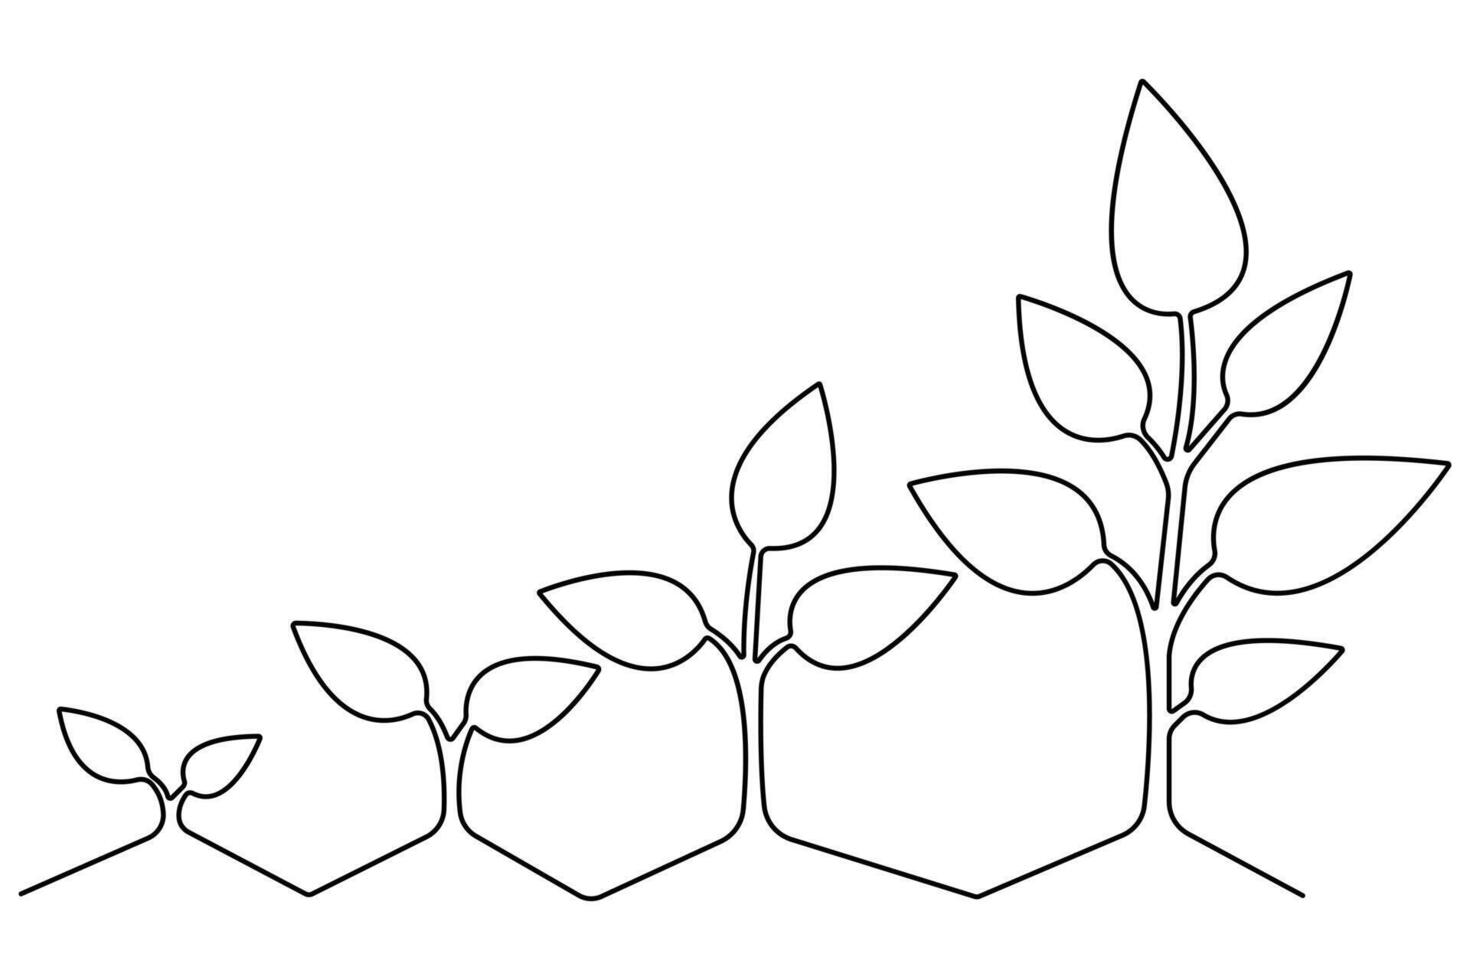 pianta in crescita continuo uno linea arte disegno di albero pianta schema vettore illustrazione